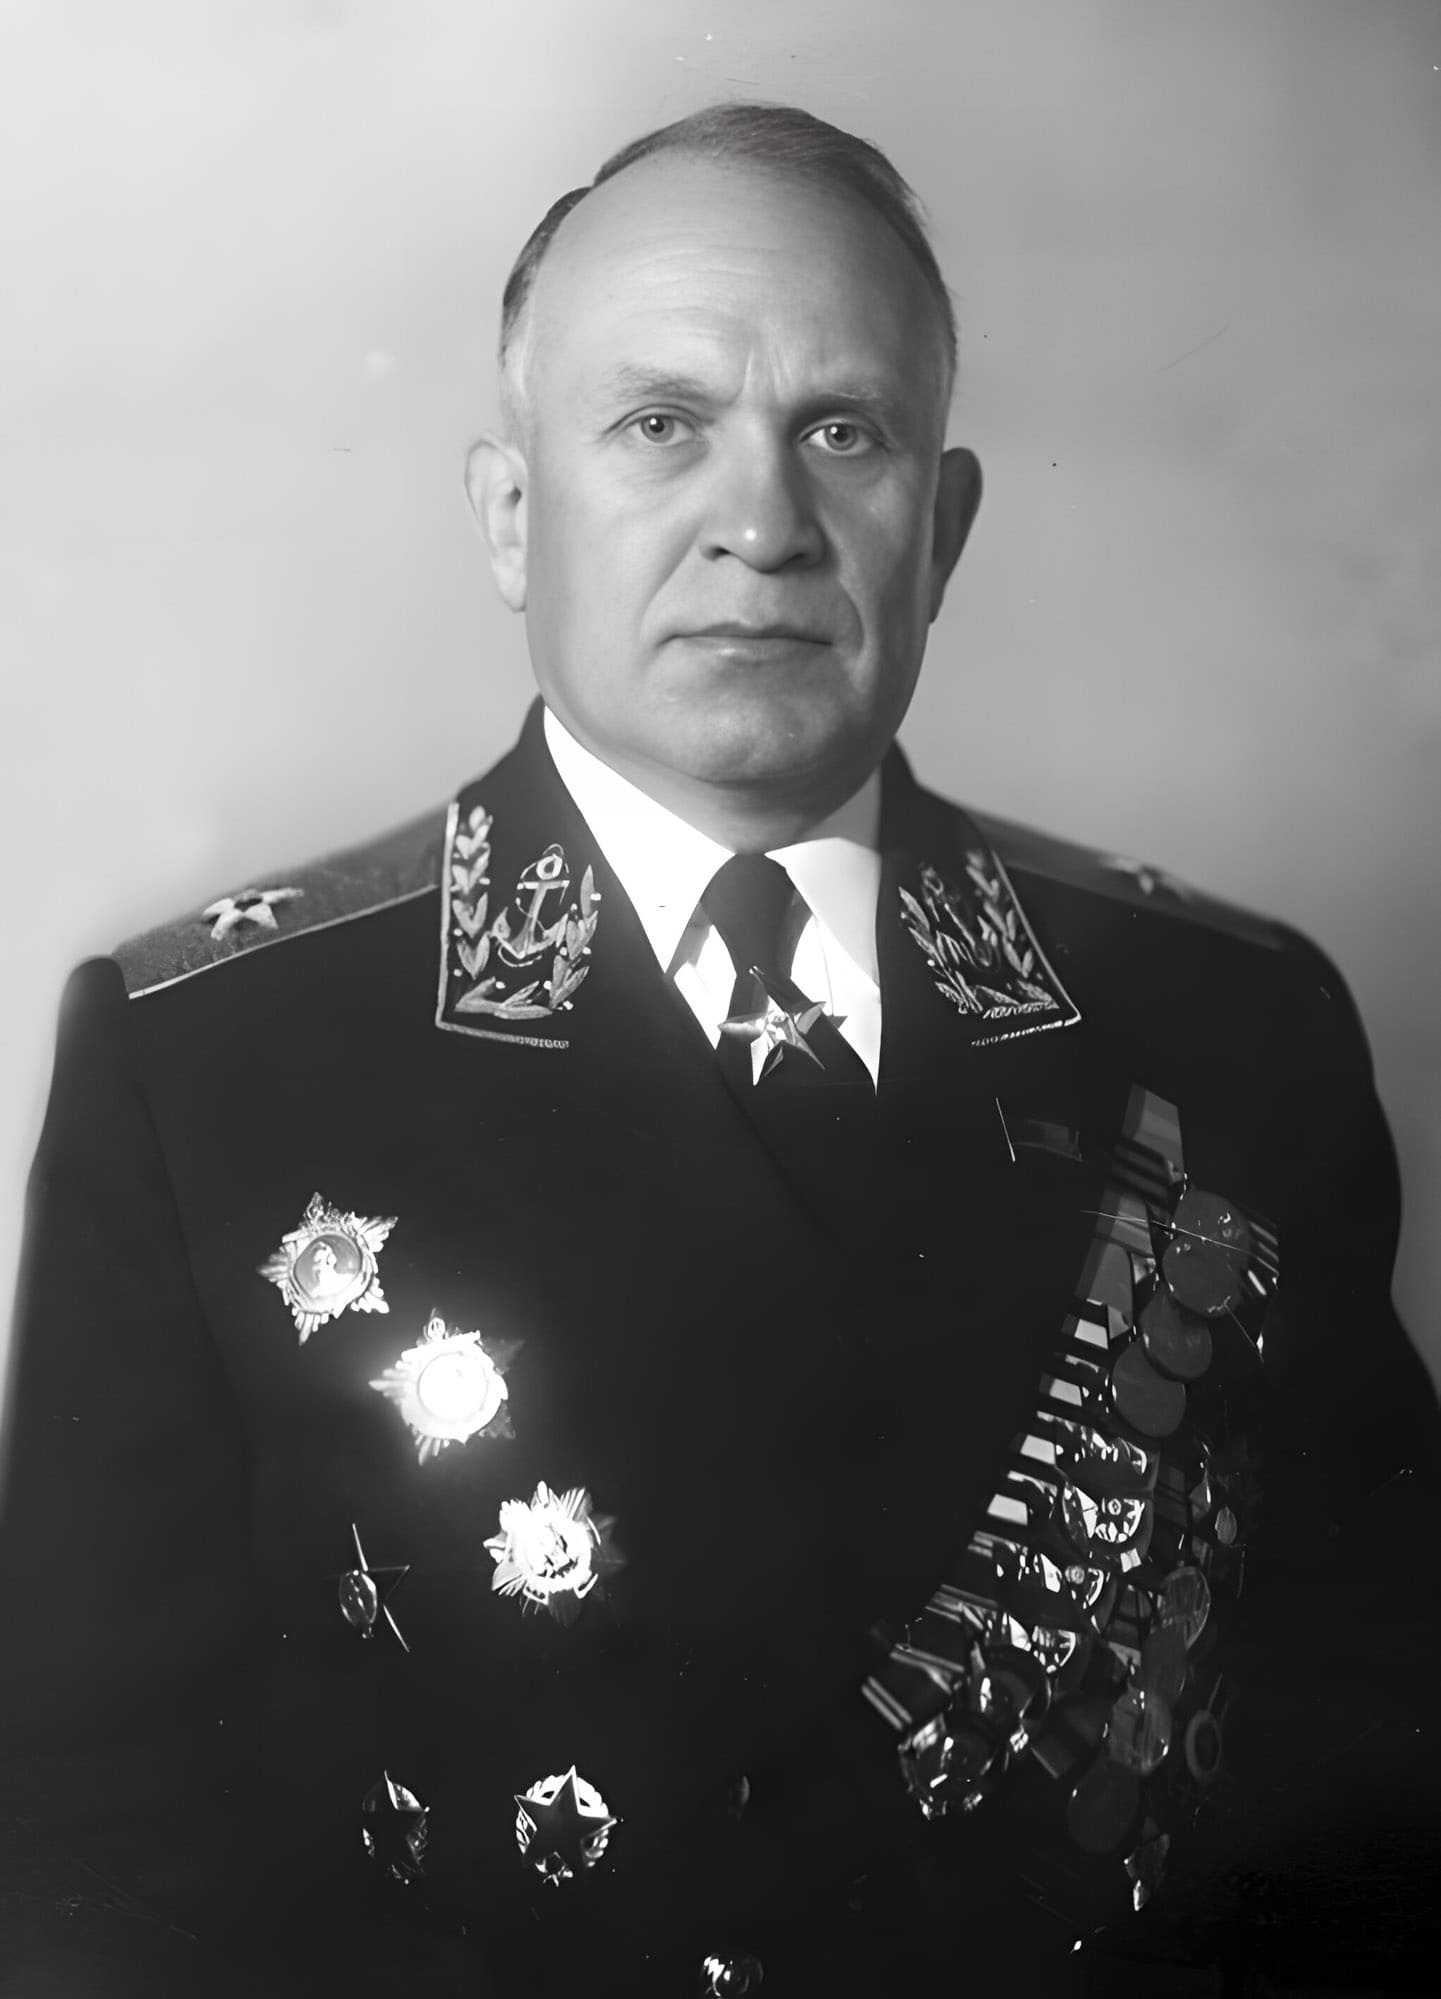 Горшков Сергей Георгиевич - командующий Азовской военной флотилией, контр-адмирал